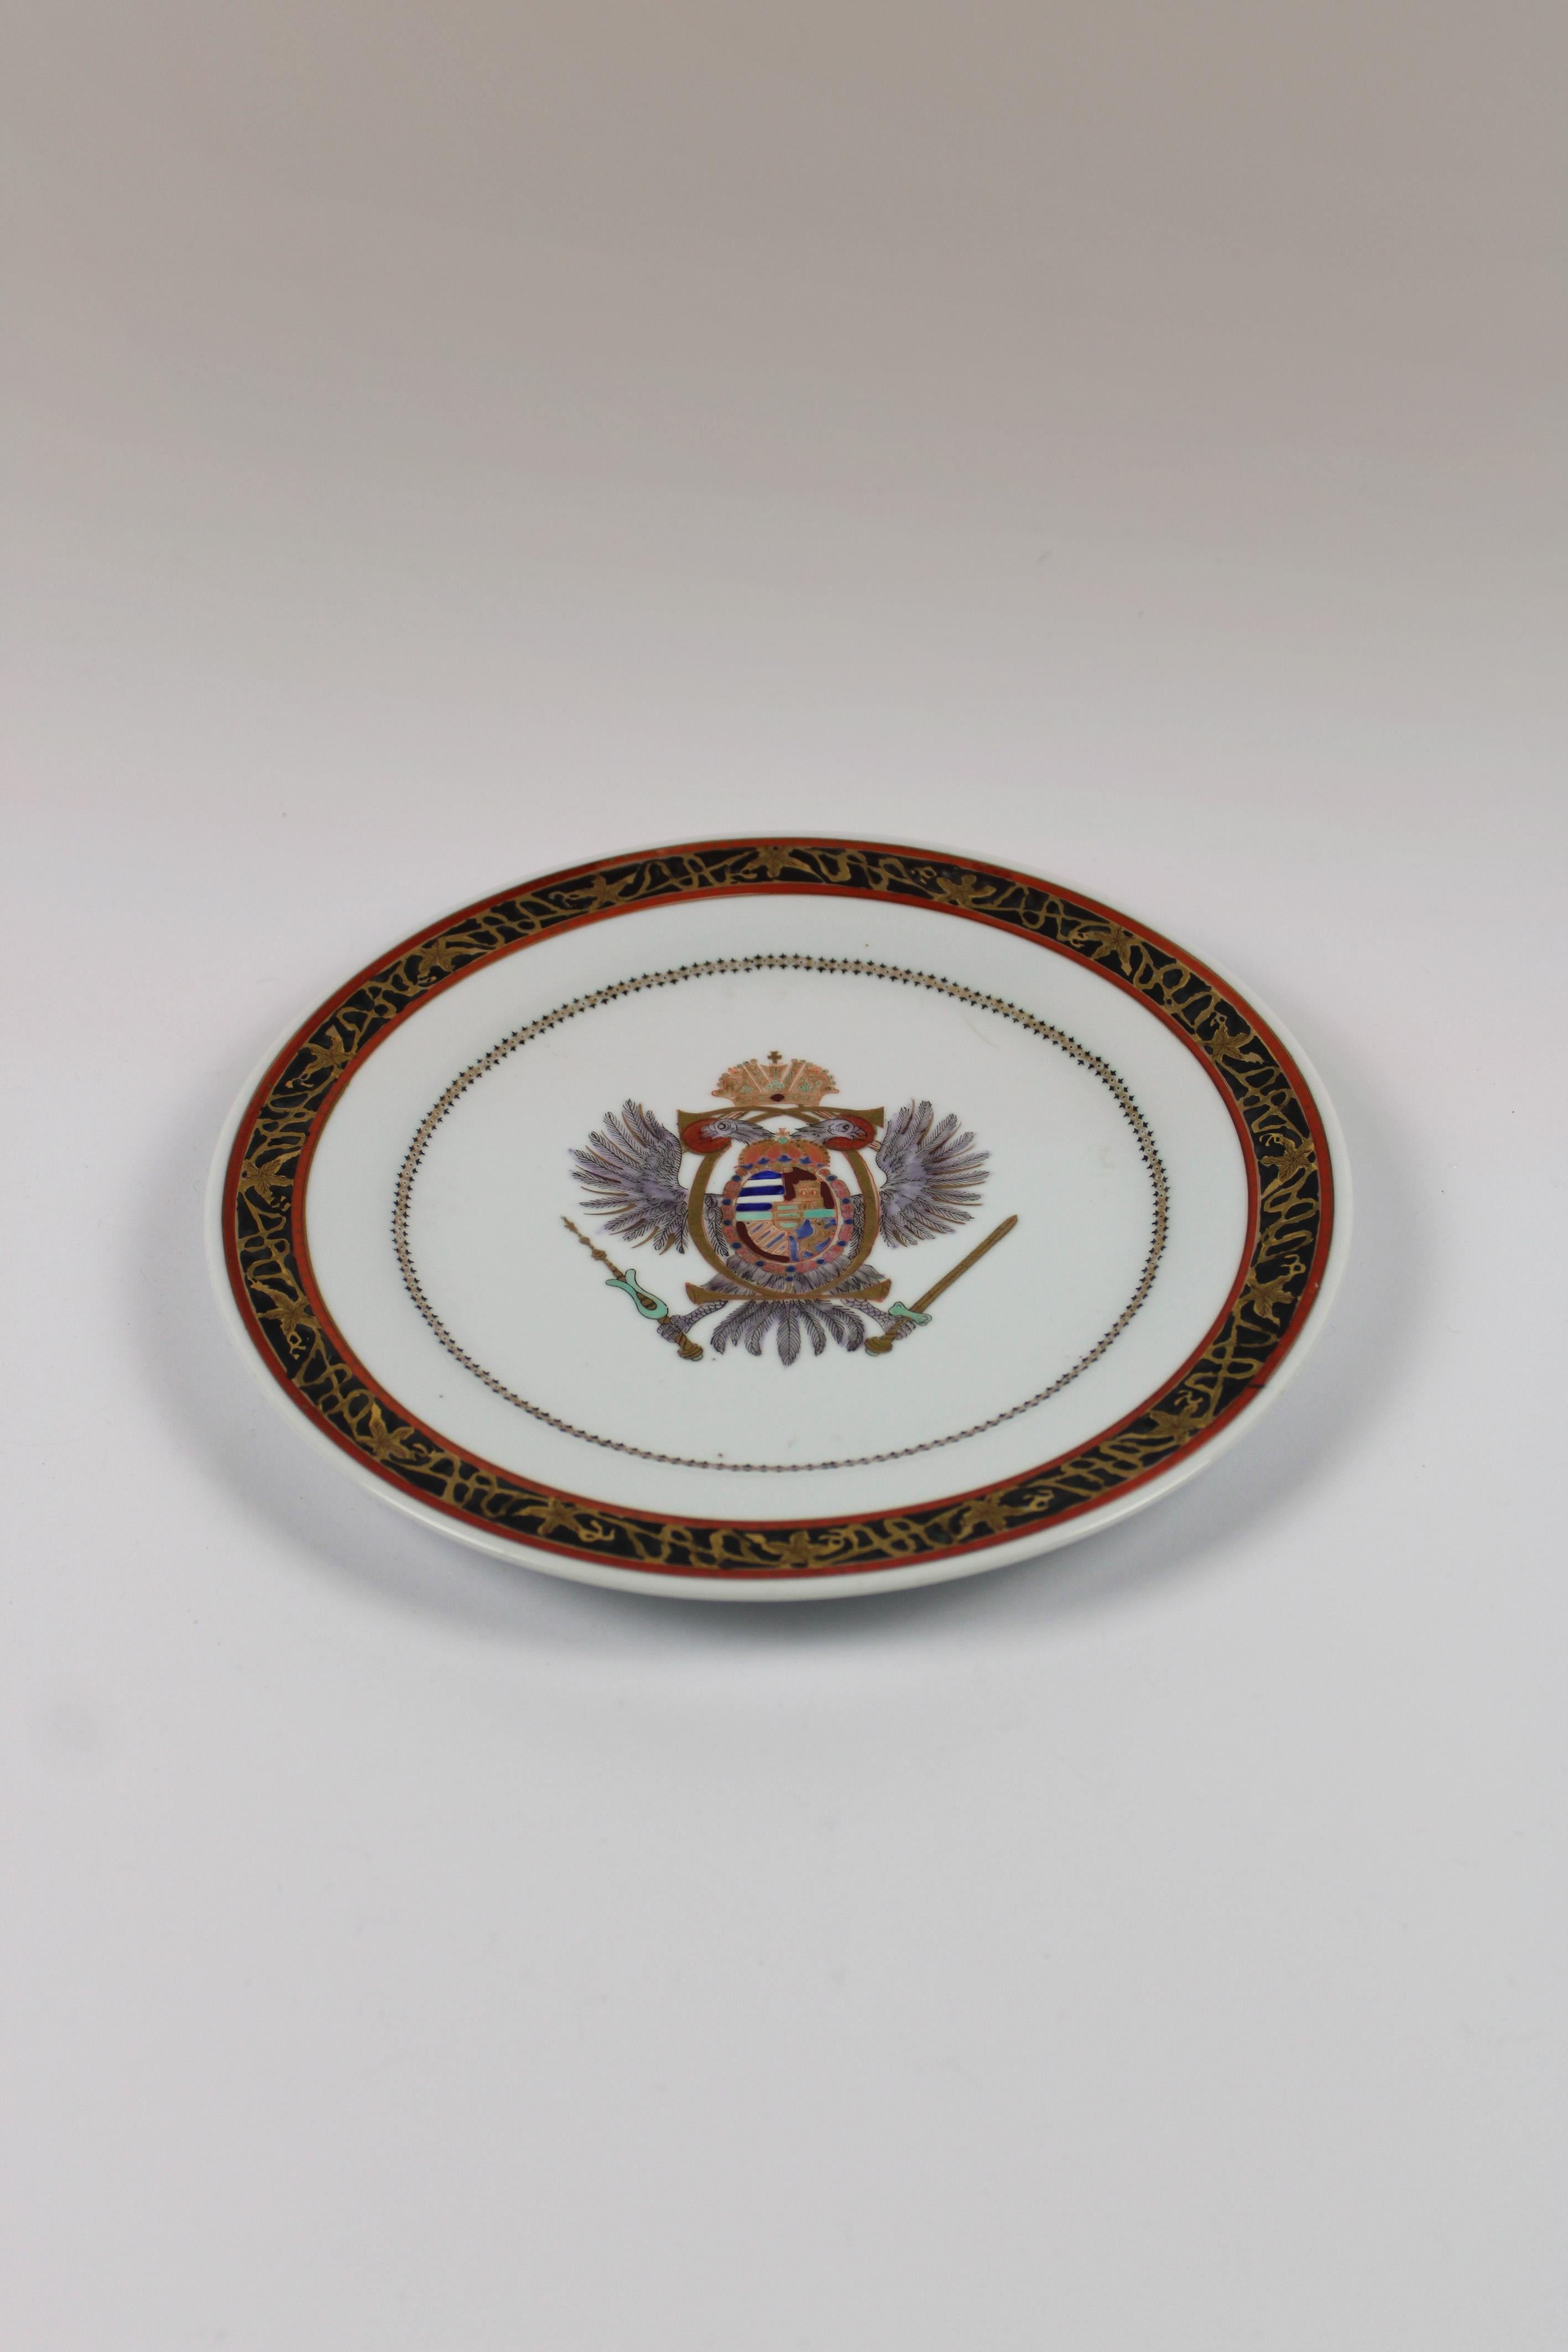 Dieser prächtige Teller von Porcelaine de Paris mit dem kaiserlich-österreichischen Adler-Motiv aus dem 19. Jahrhundert unter Napoleon III. lässt den königlichen Charme der Geschichte erahnen. Dieser exquisite, mit viel Liebe zum Detail gefertigte